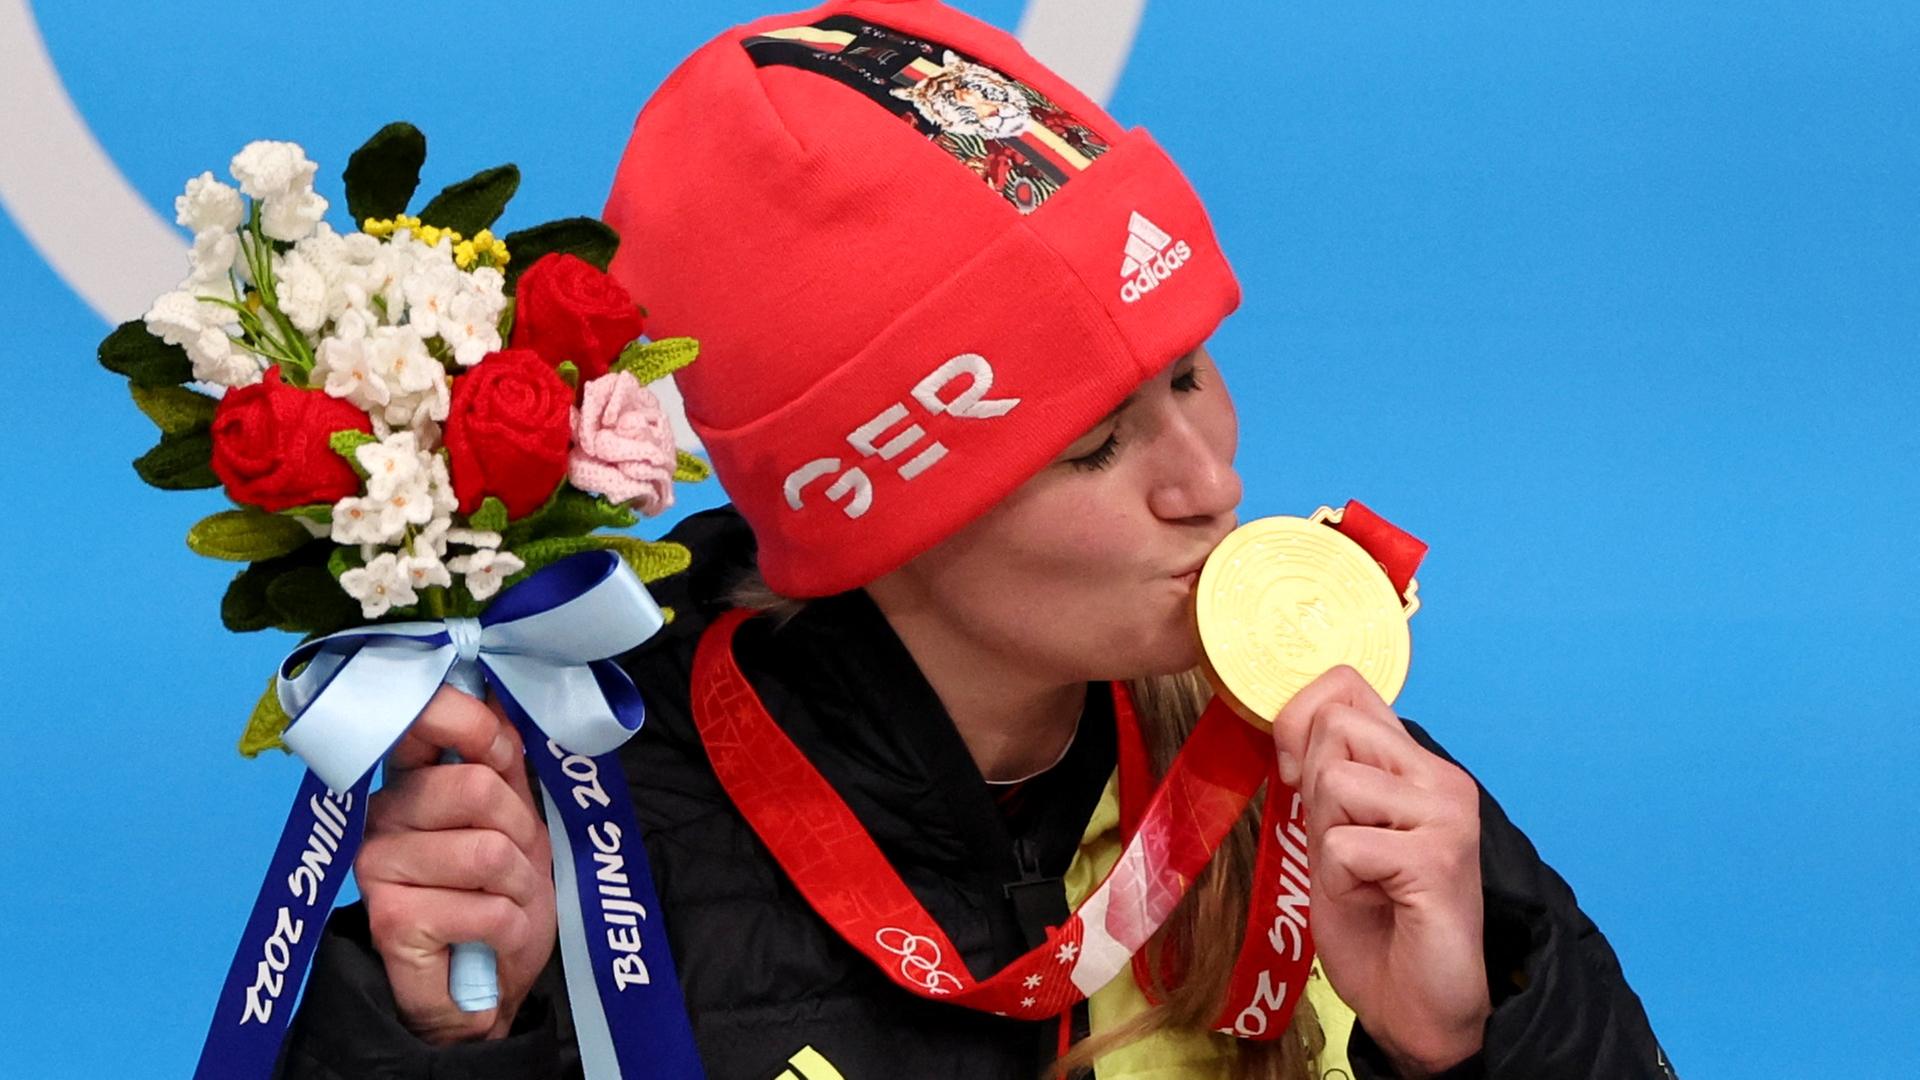 Natalie Geisenberger freut sich über ihren Sieg im Rennrodeln und küsst auf dem Podium ihre Goldmedaille.